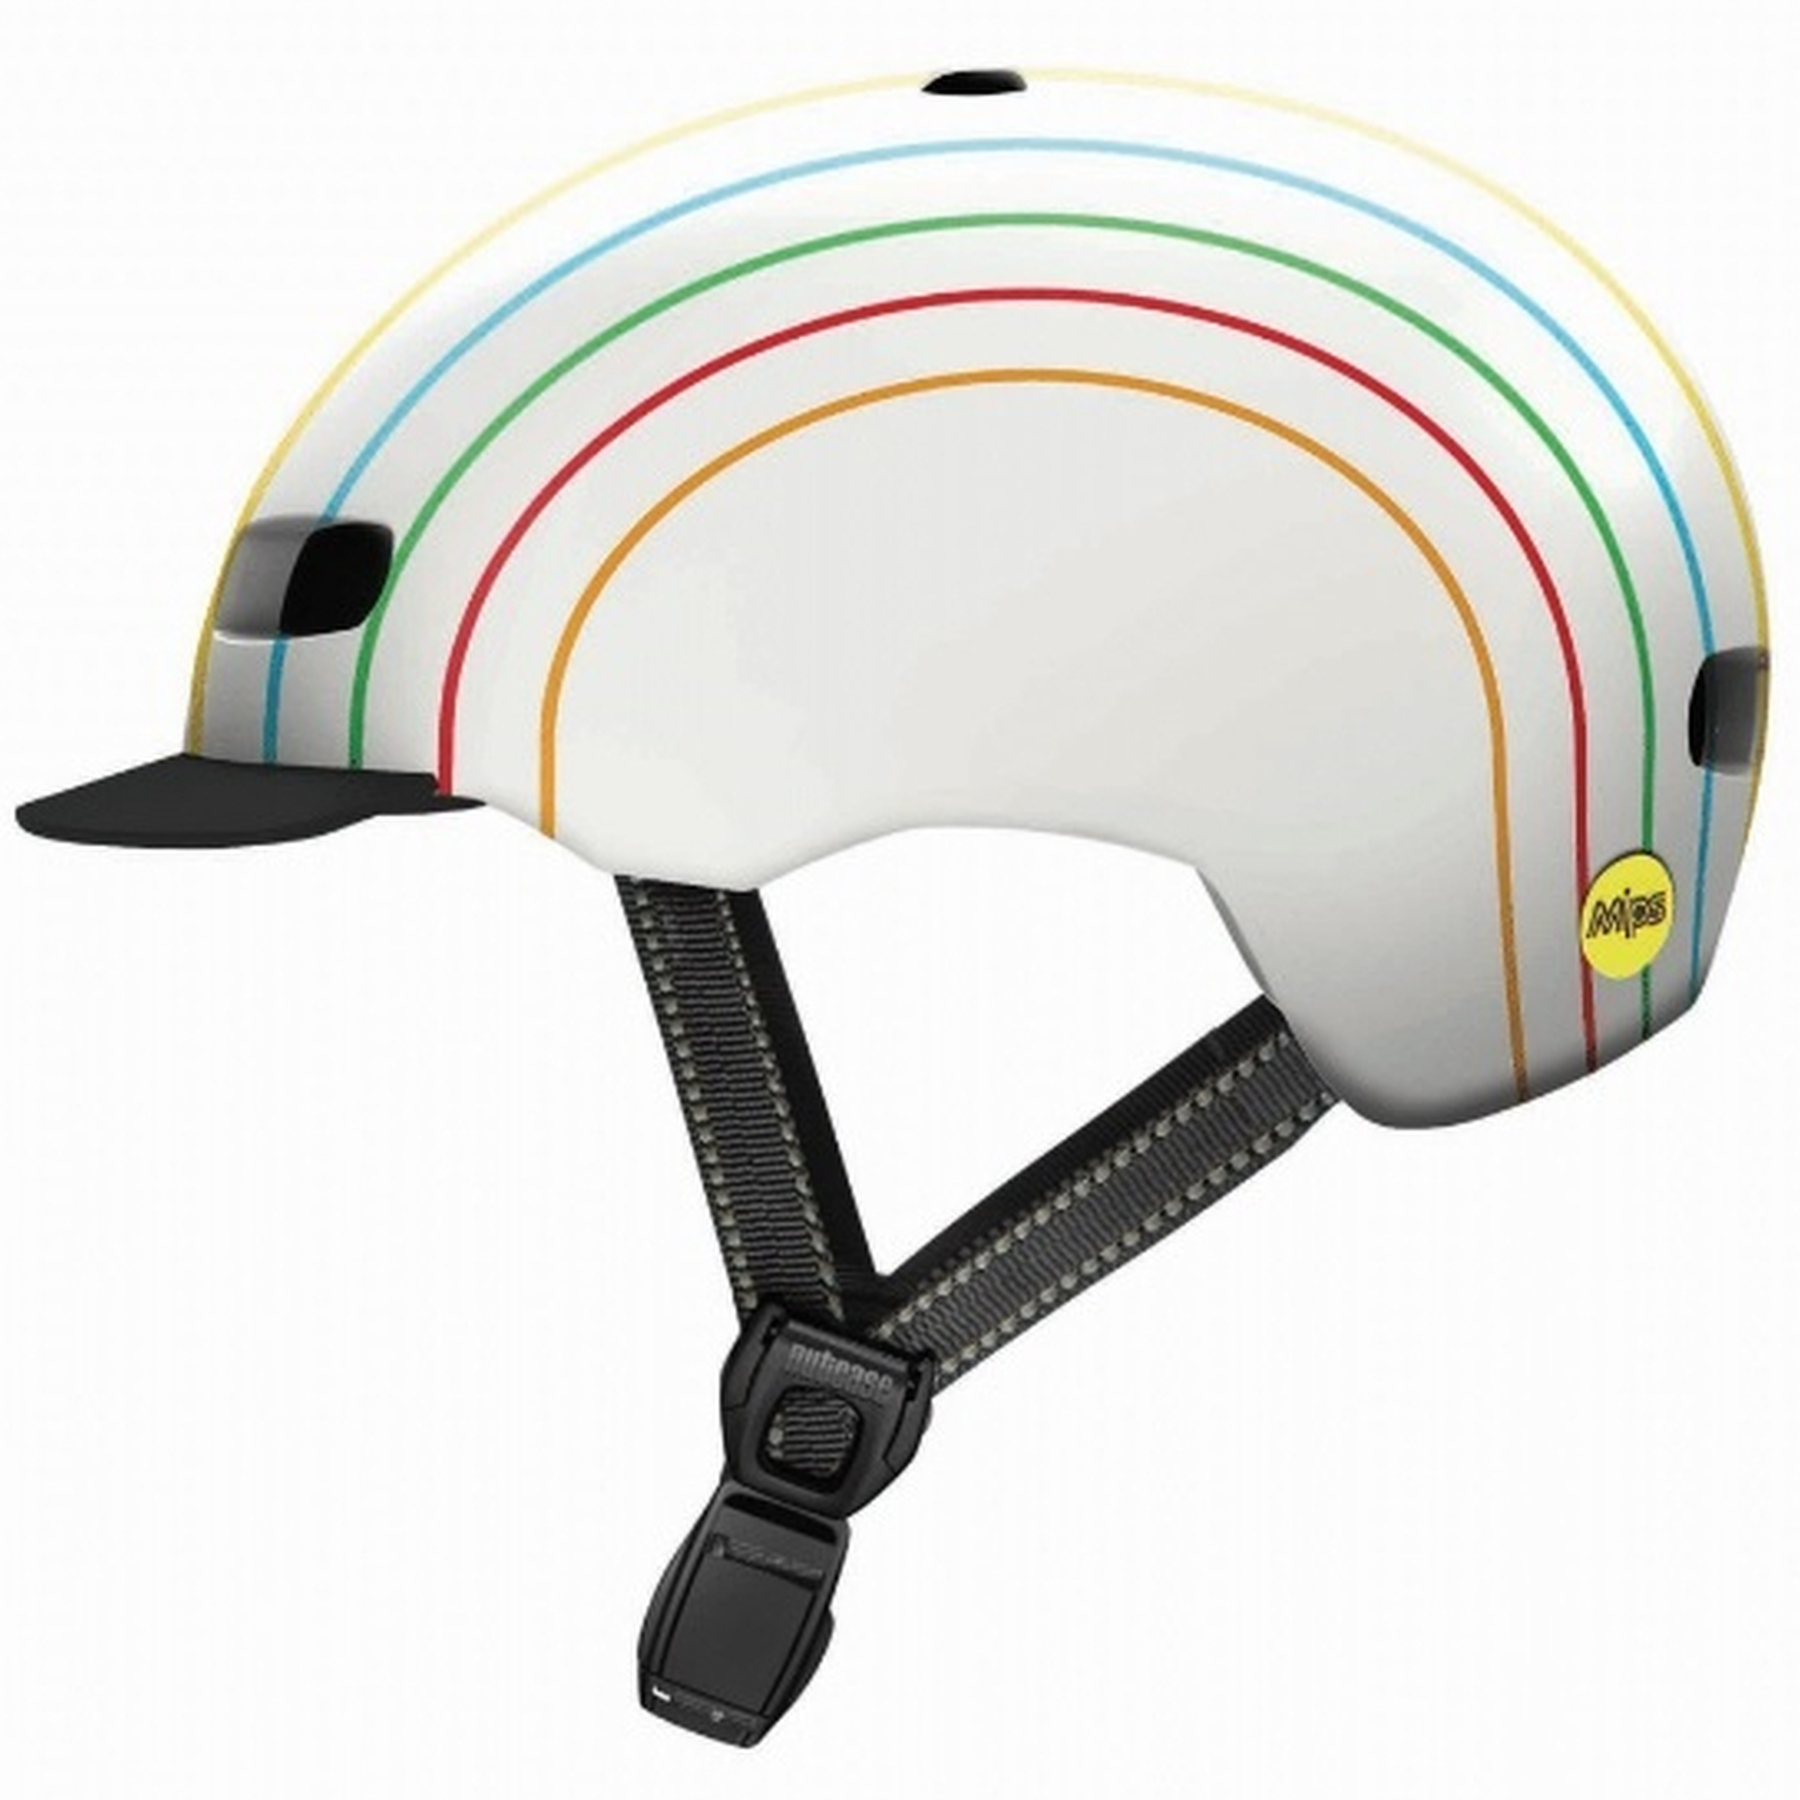 Productfoto van Nutcase Street MIPS Helmet - Pinwheel